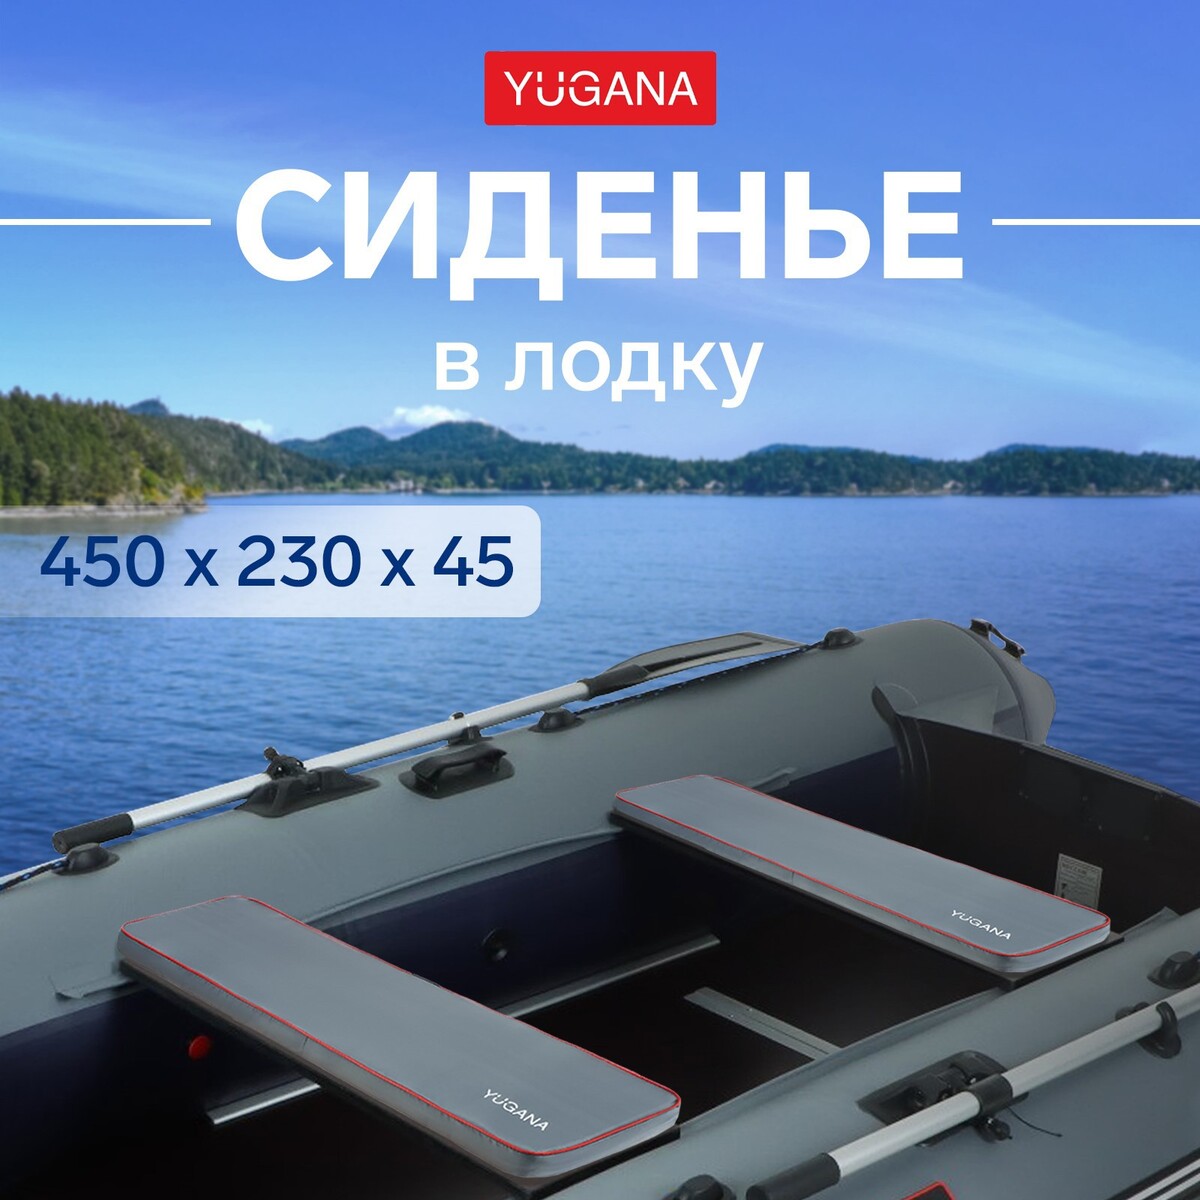 Сиденье в лодку yugana, цвет серый, 450 x 230 x 45 мм сиденье в лодку yugana серый 450 x 230 x 30 мм